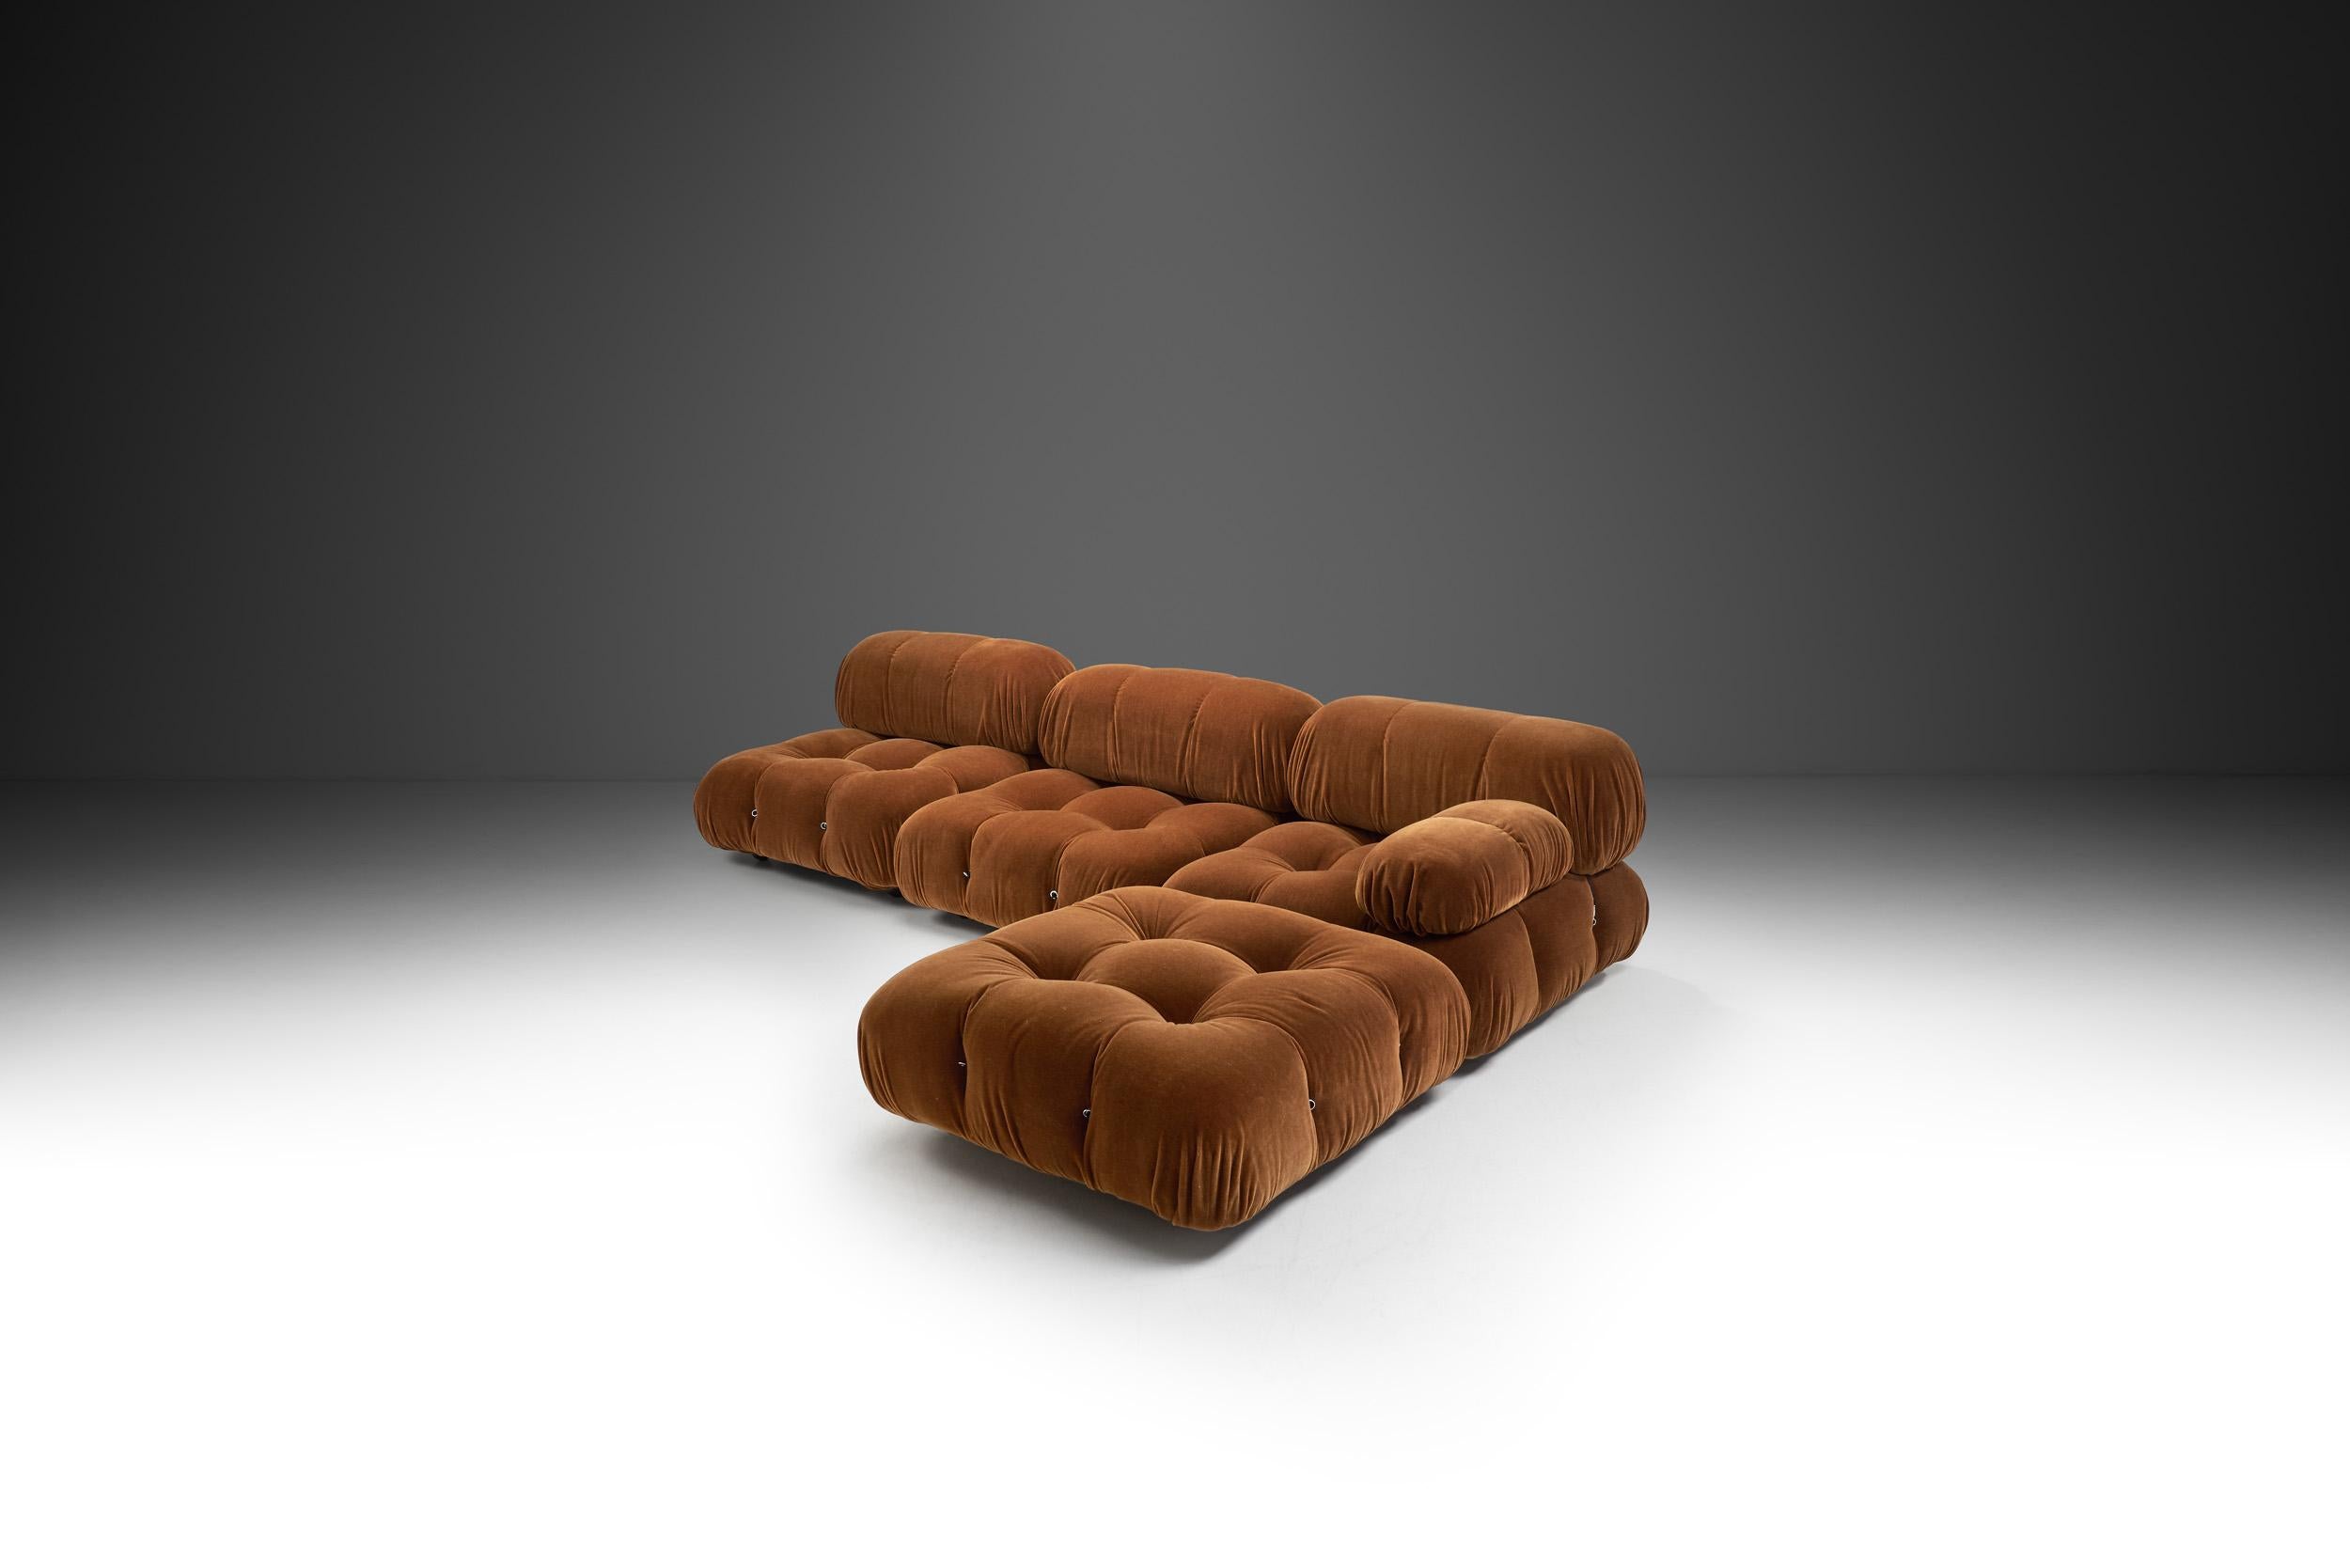 b&b italia camaleonda sofa